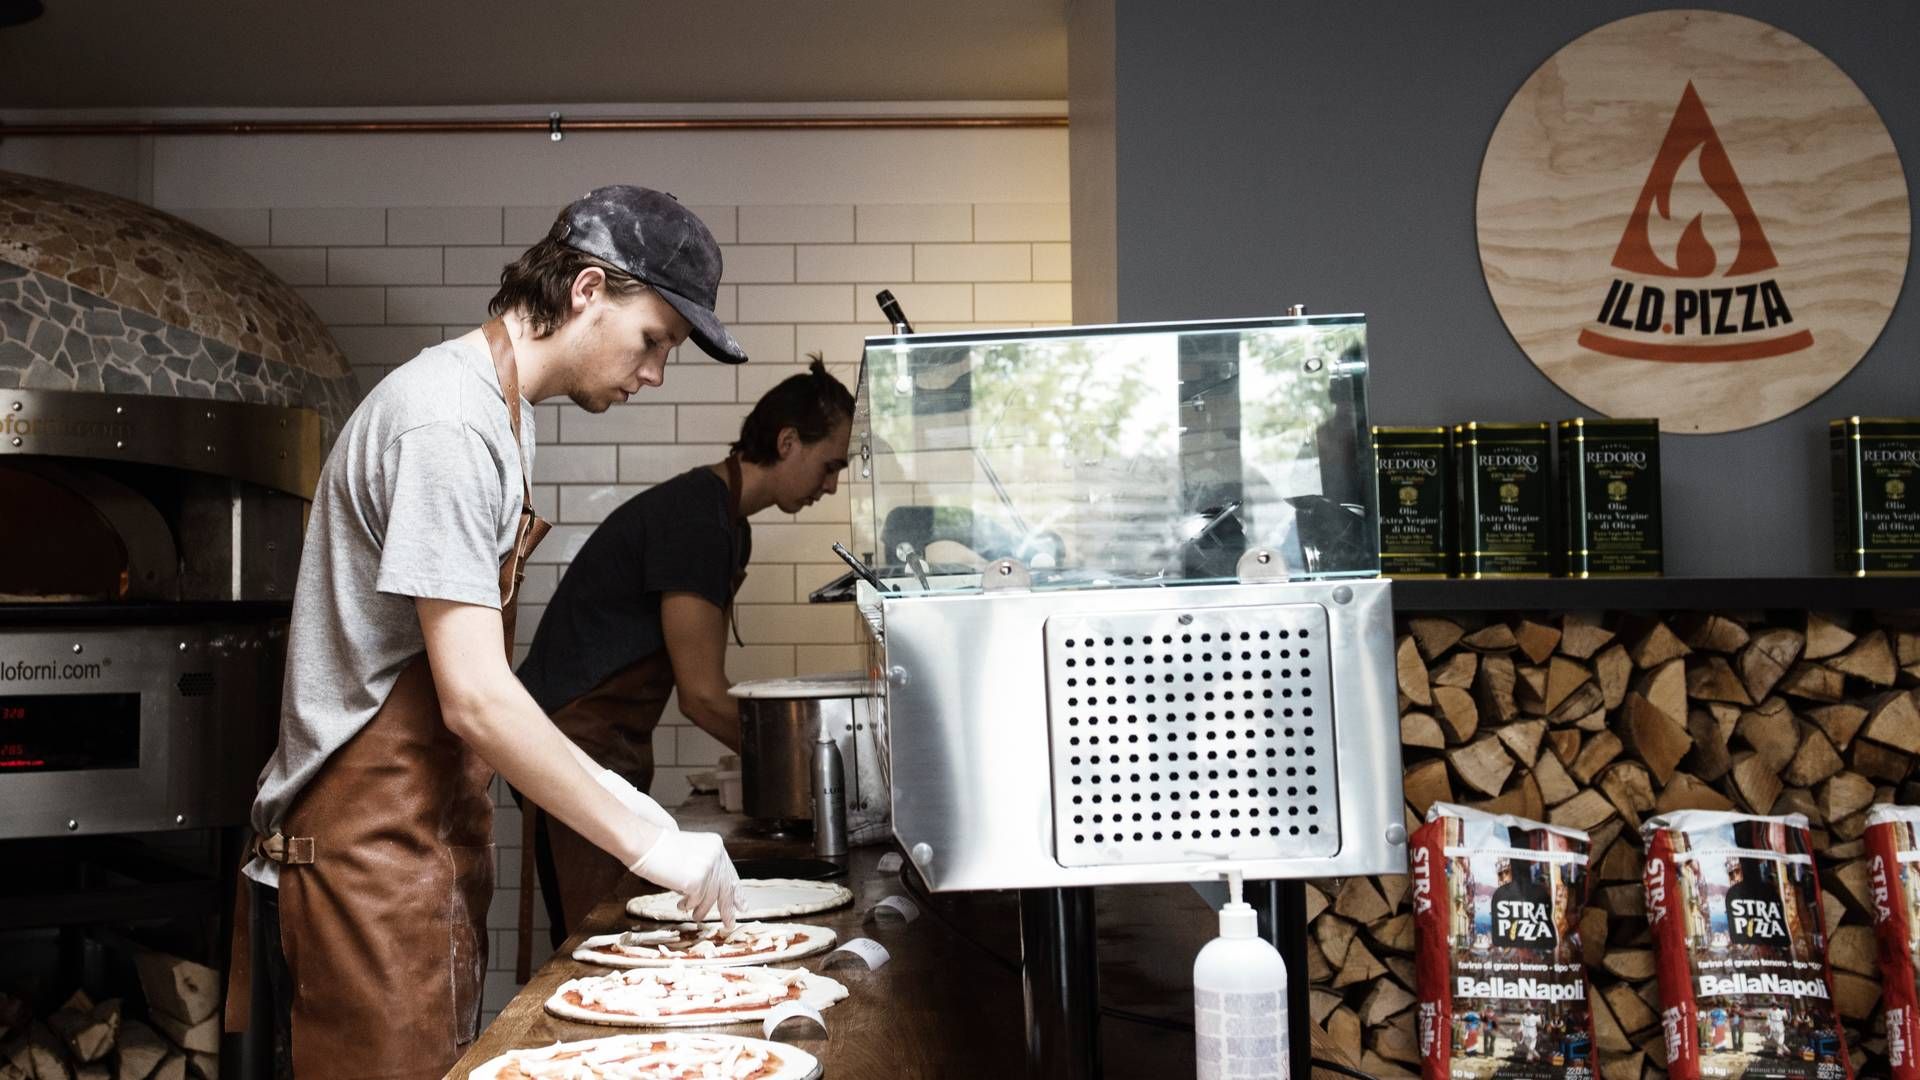 Ild Pizza-kæden er begæret konkurs. Tidligere har den jyske pizzakæde været oppe på 21 restauranter, men nu lukker de sidste 12. | Foto: Morten Lau-nielsen